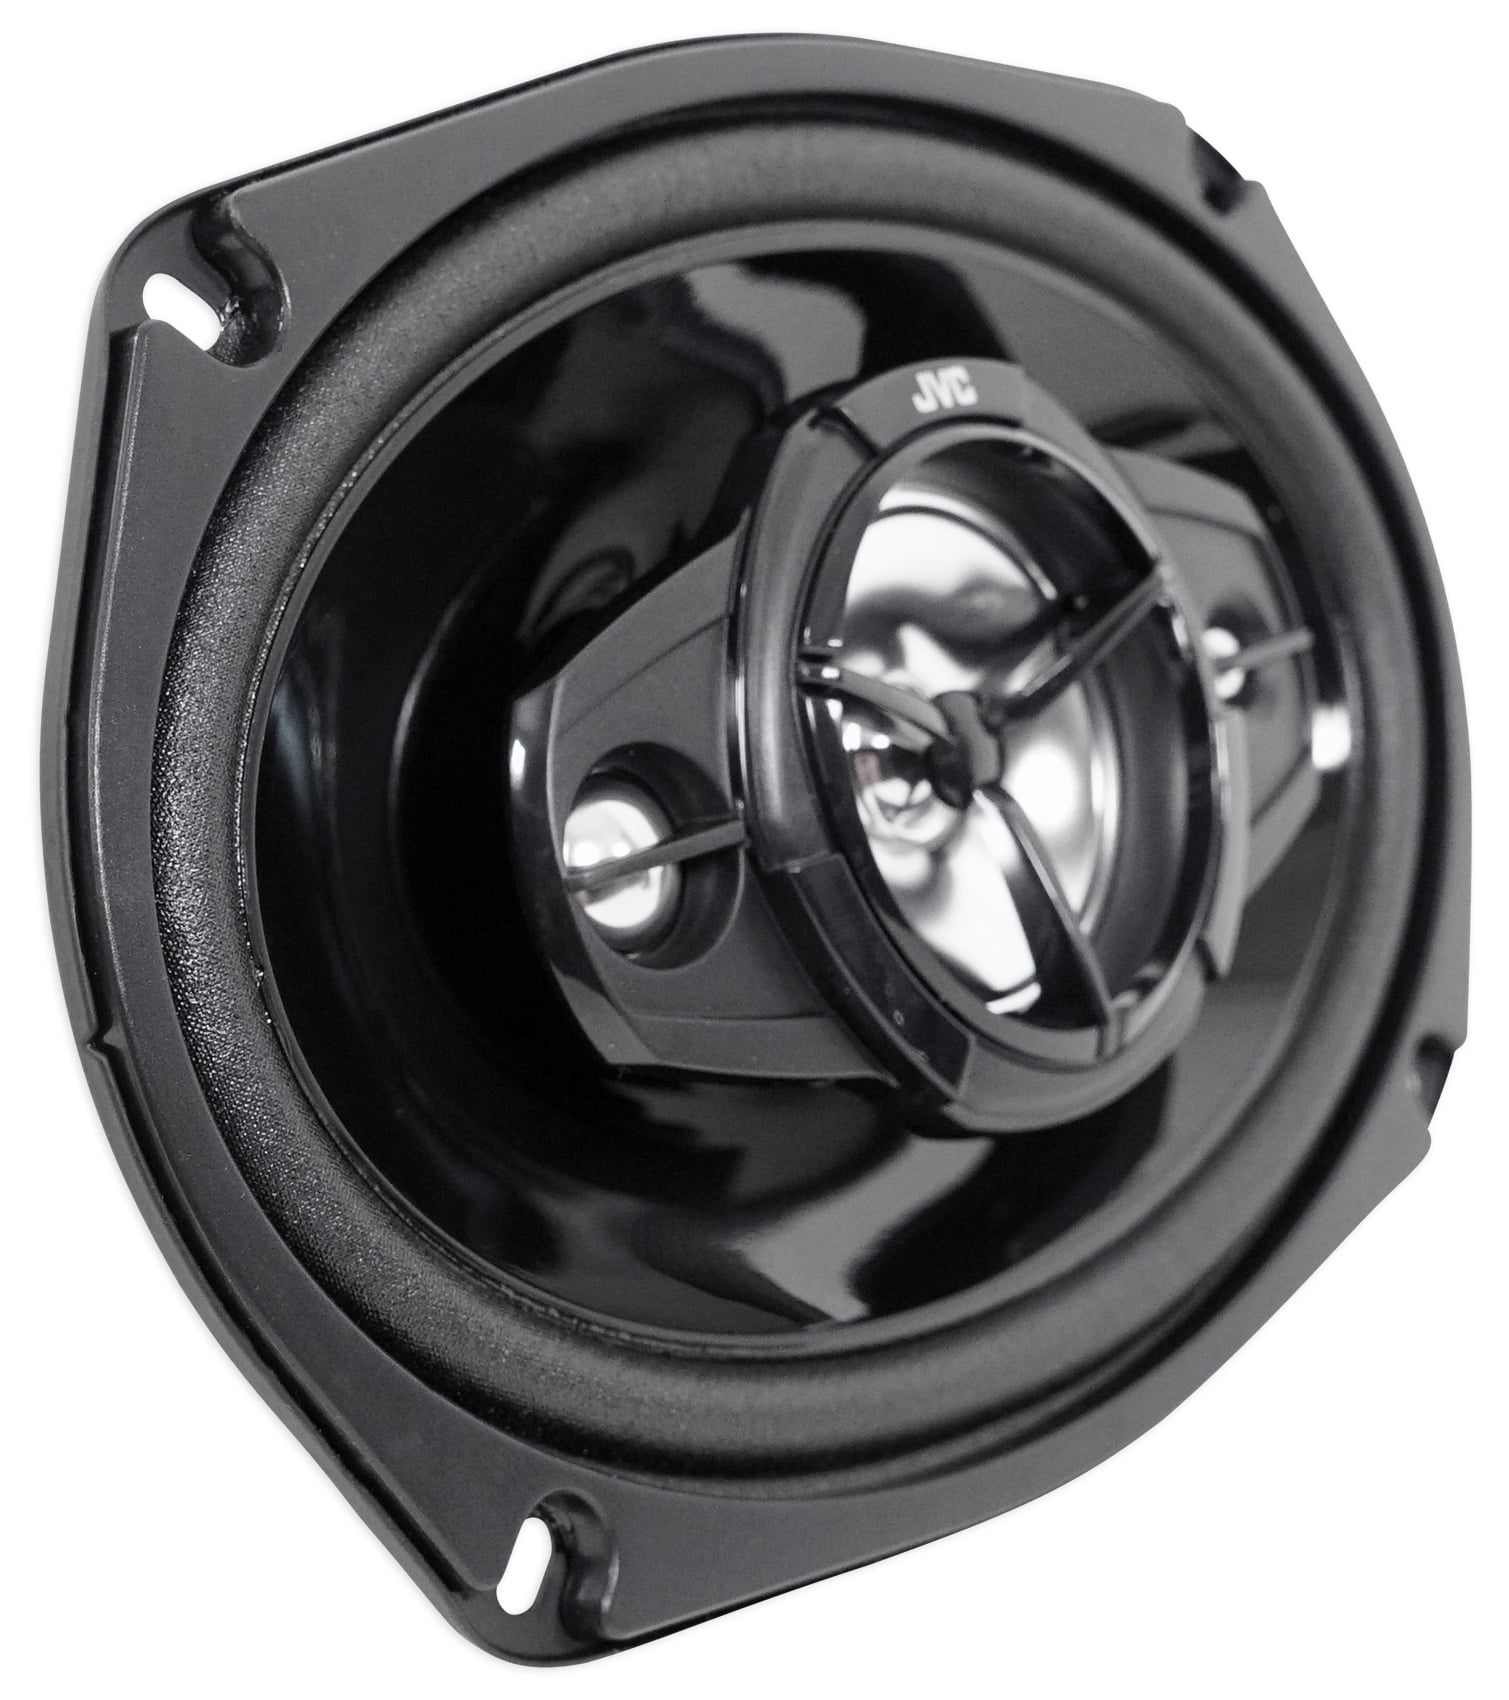 New JVC CS-DR6940 6x9 2200 Watt 4-Way Car Stereo Audio Speakers 4